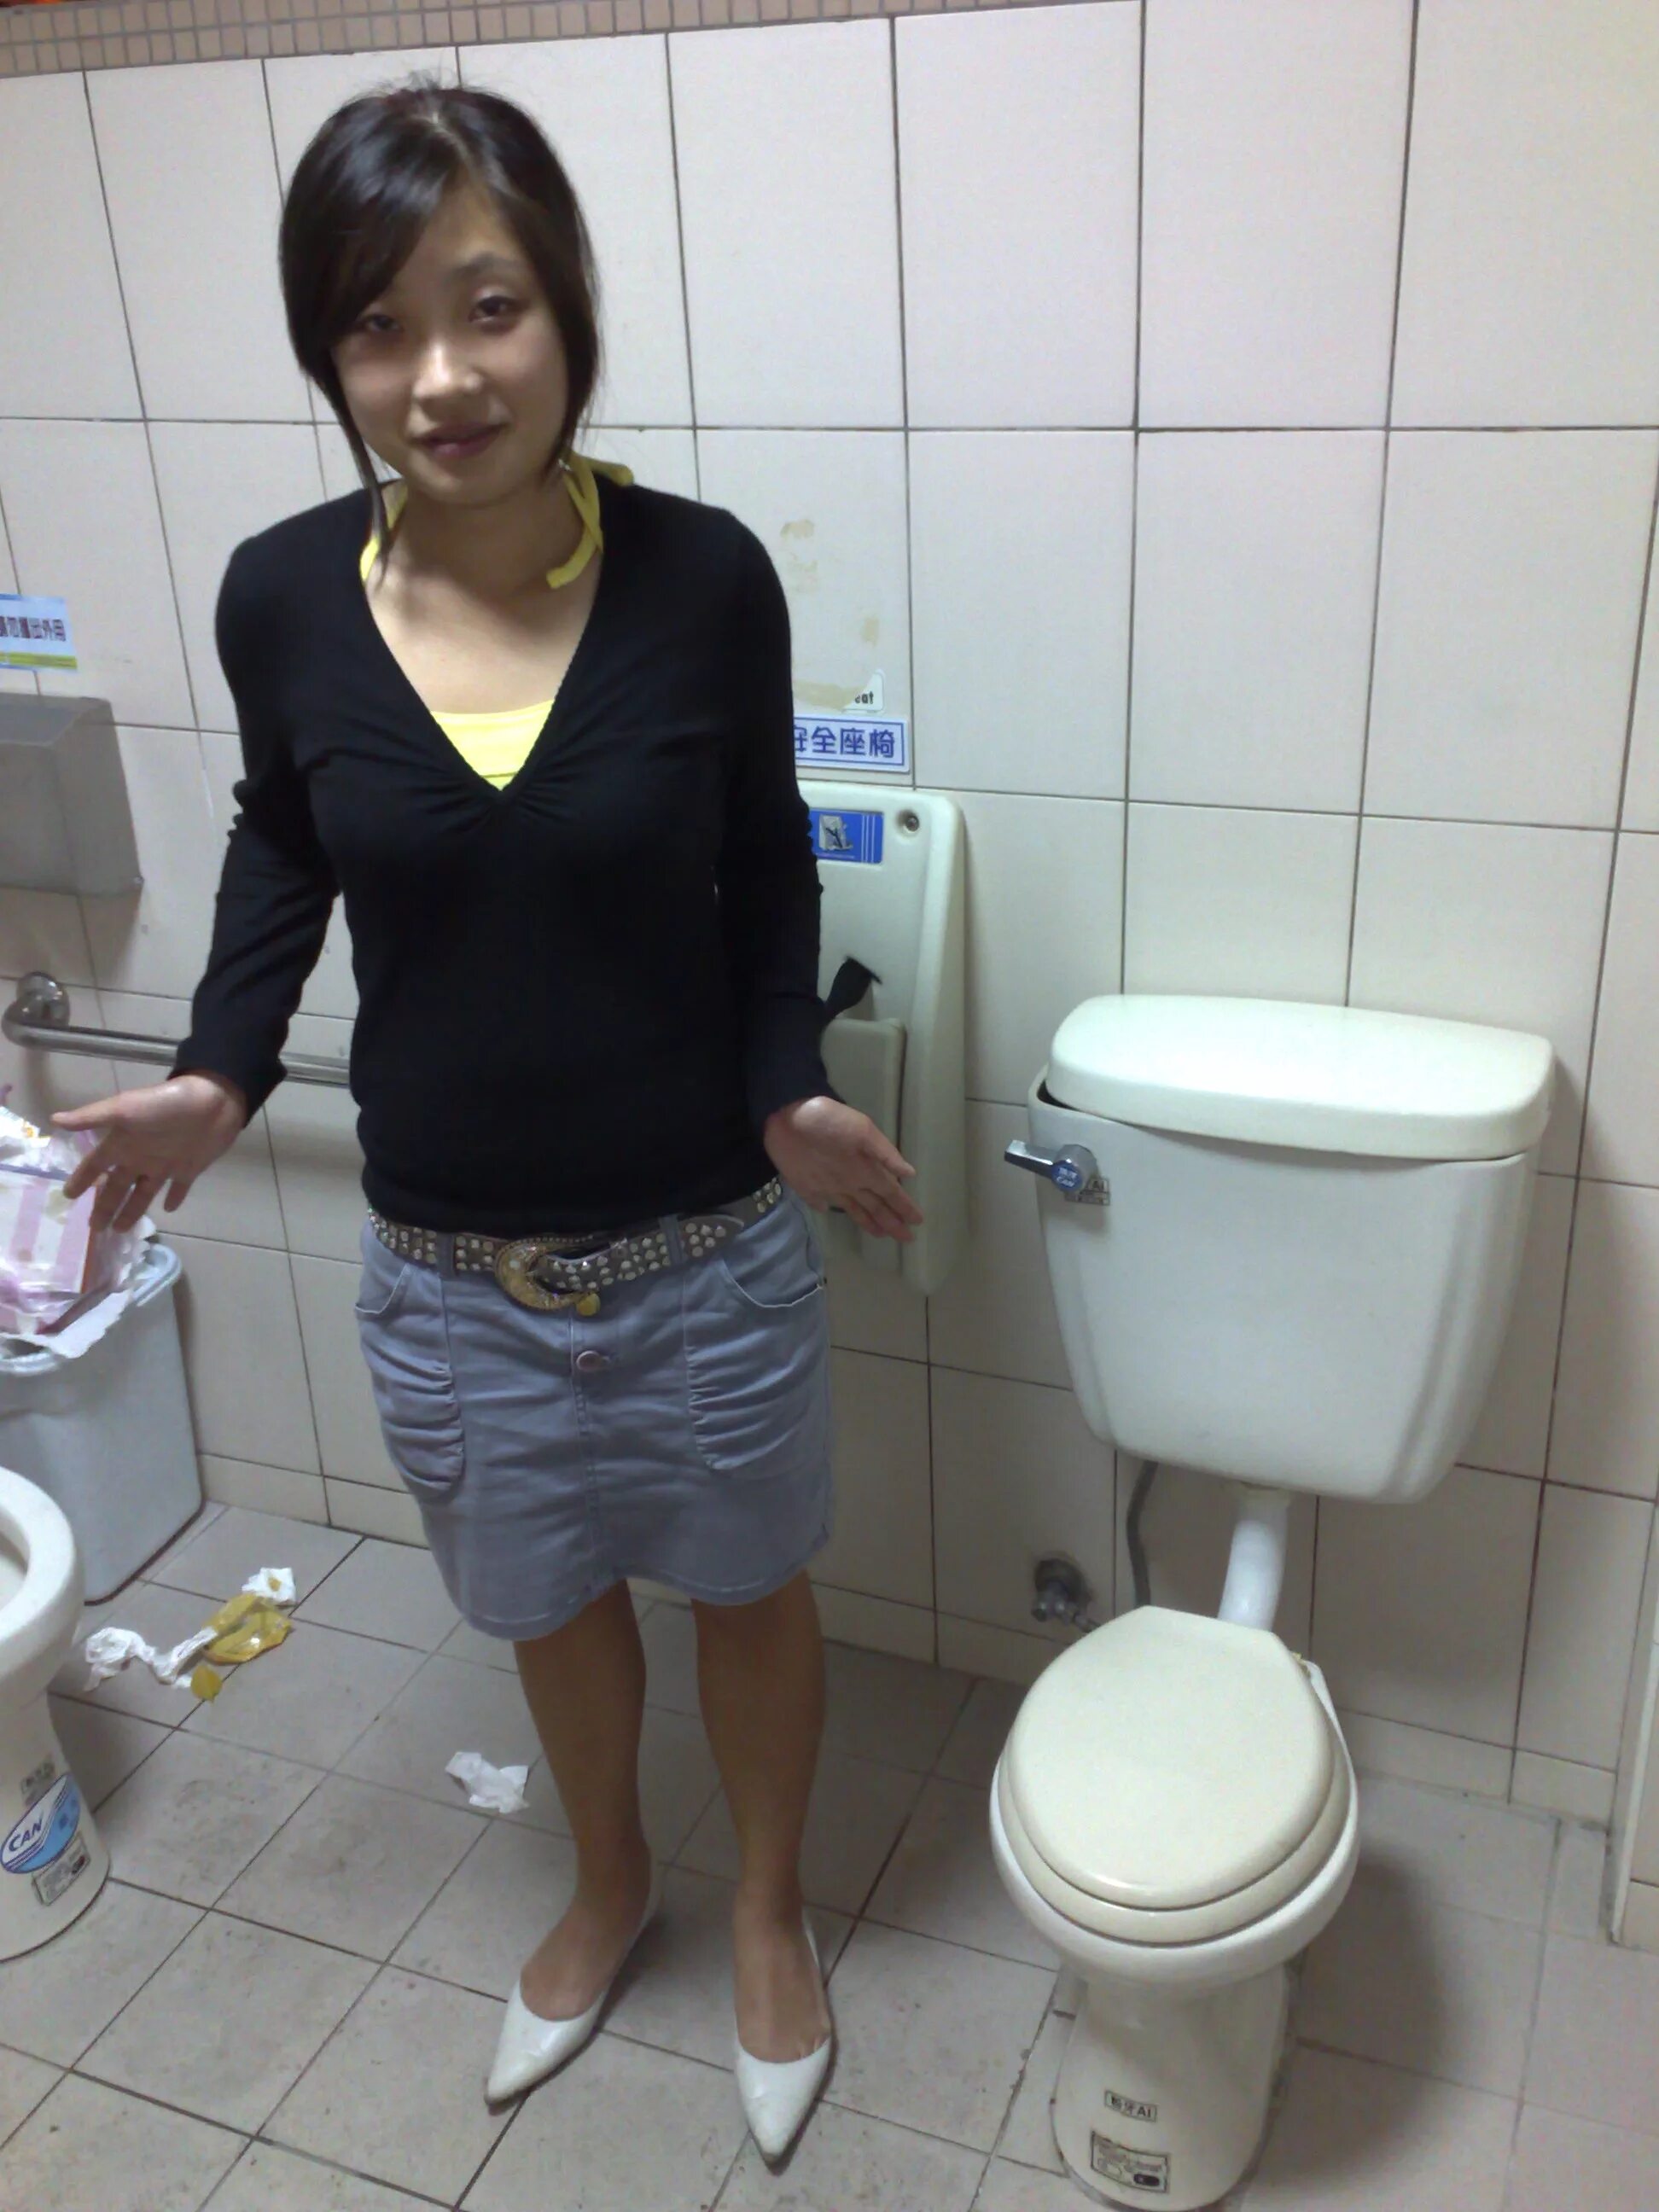 Женщина дома в туалете. Девочка в туалете. Туалет азиатского типа. Красивая девушка в туалете. Азиатский унитаз.